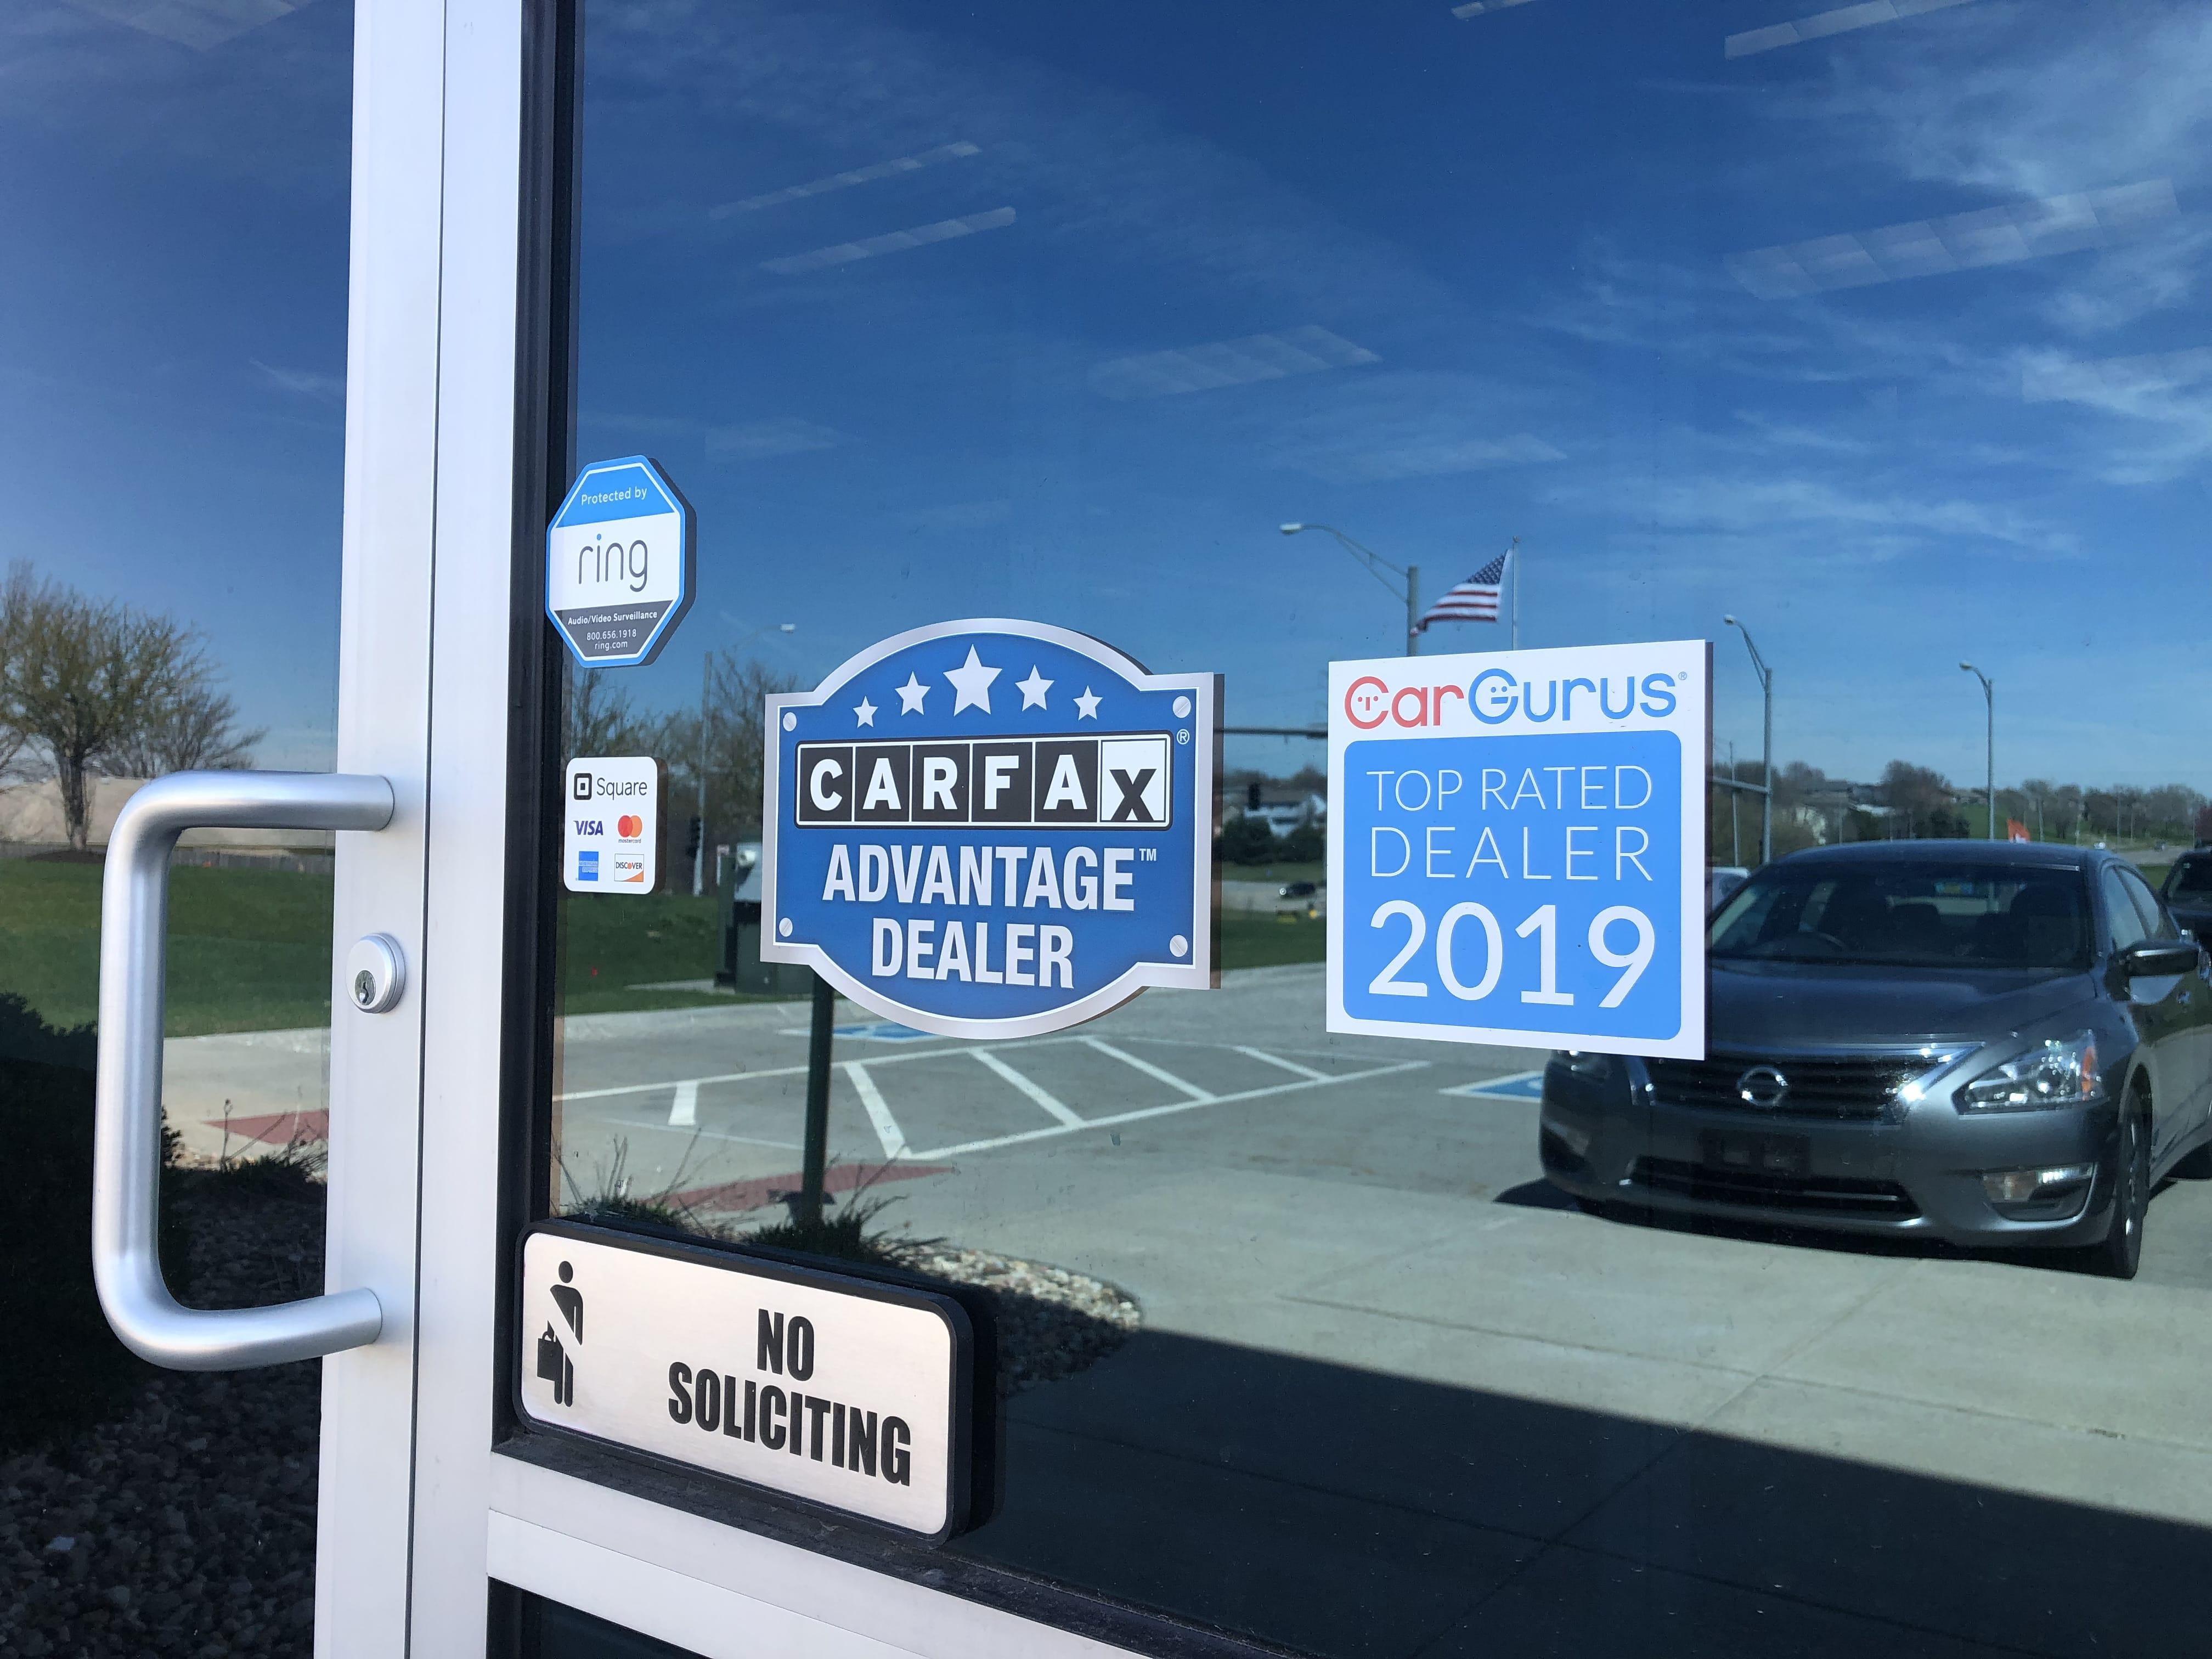 Gateway Auto - Car Sales Center Photo